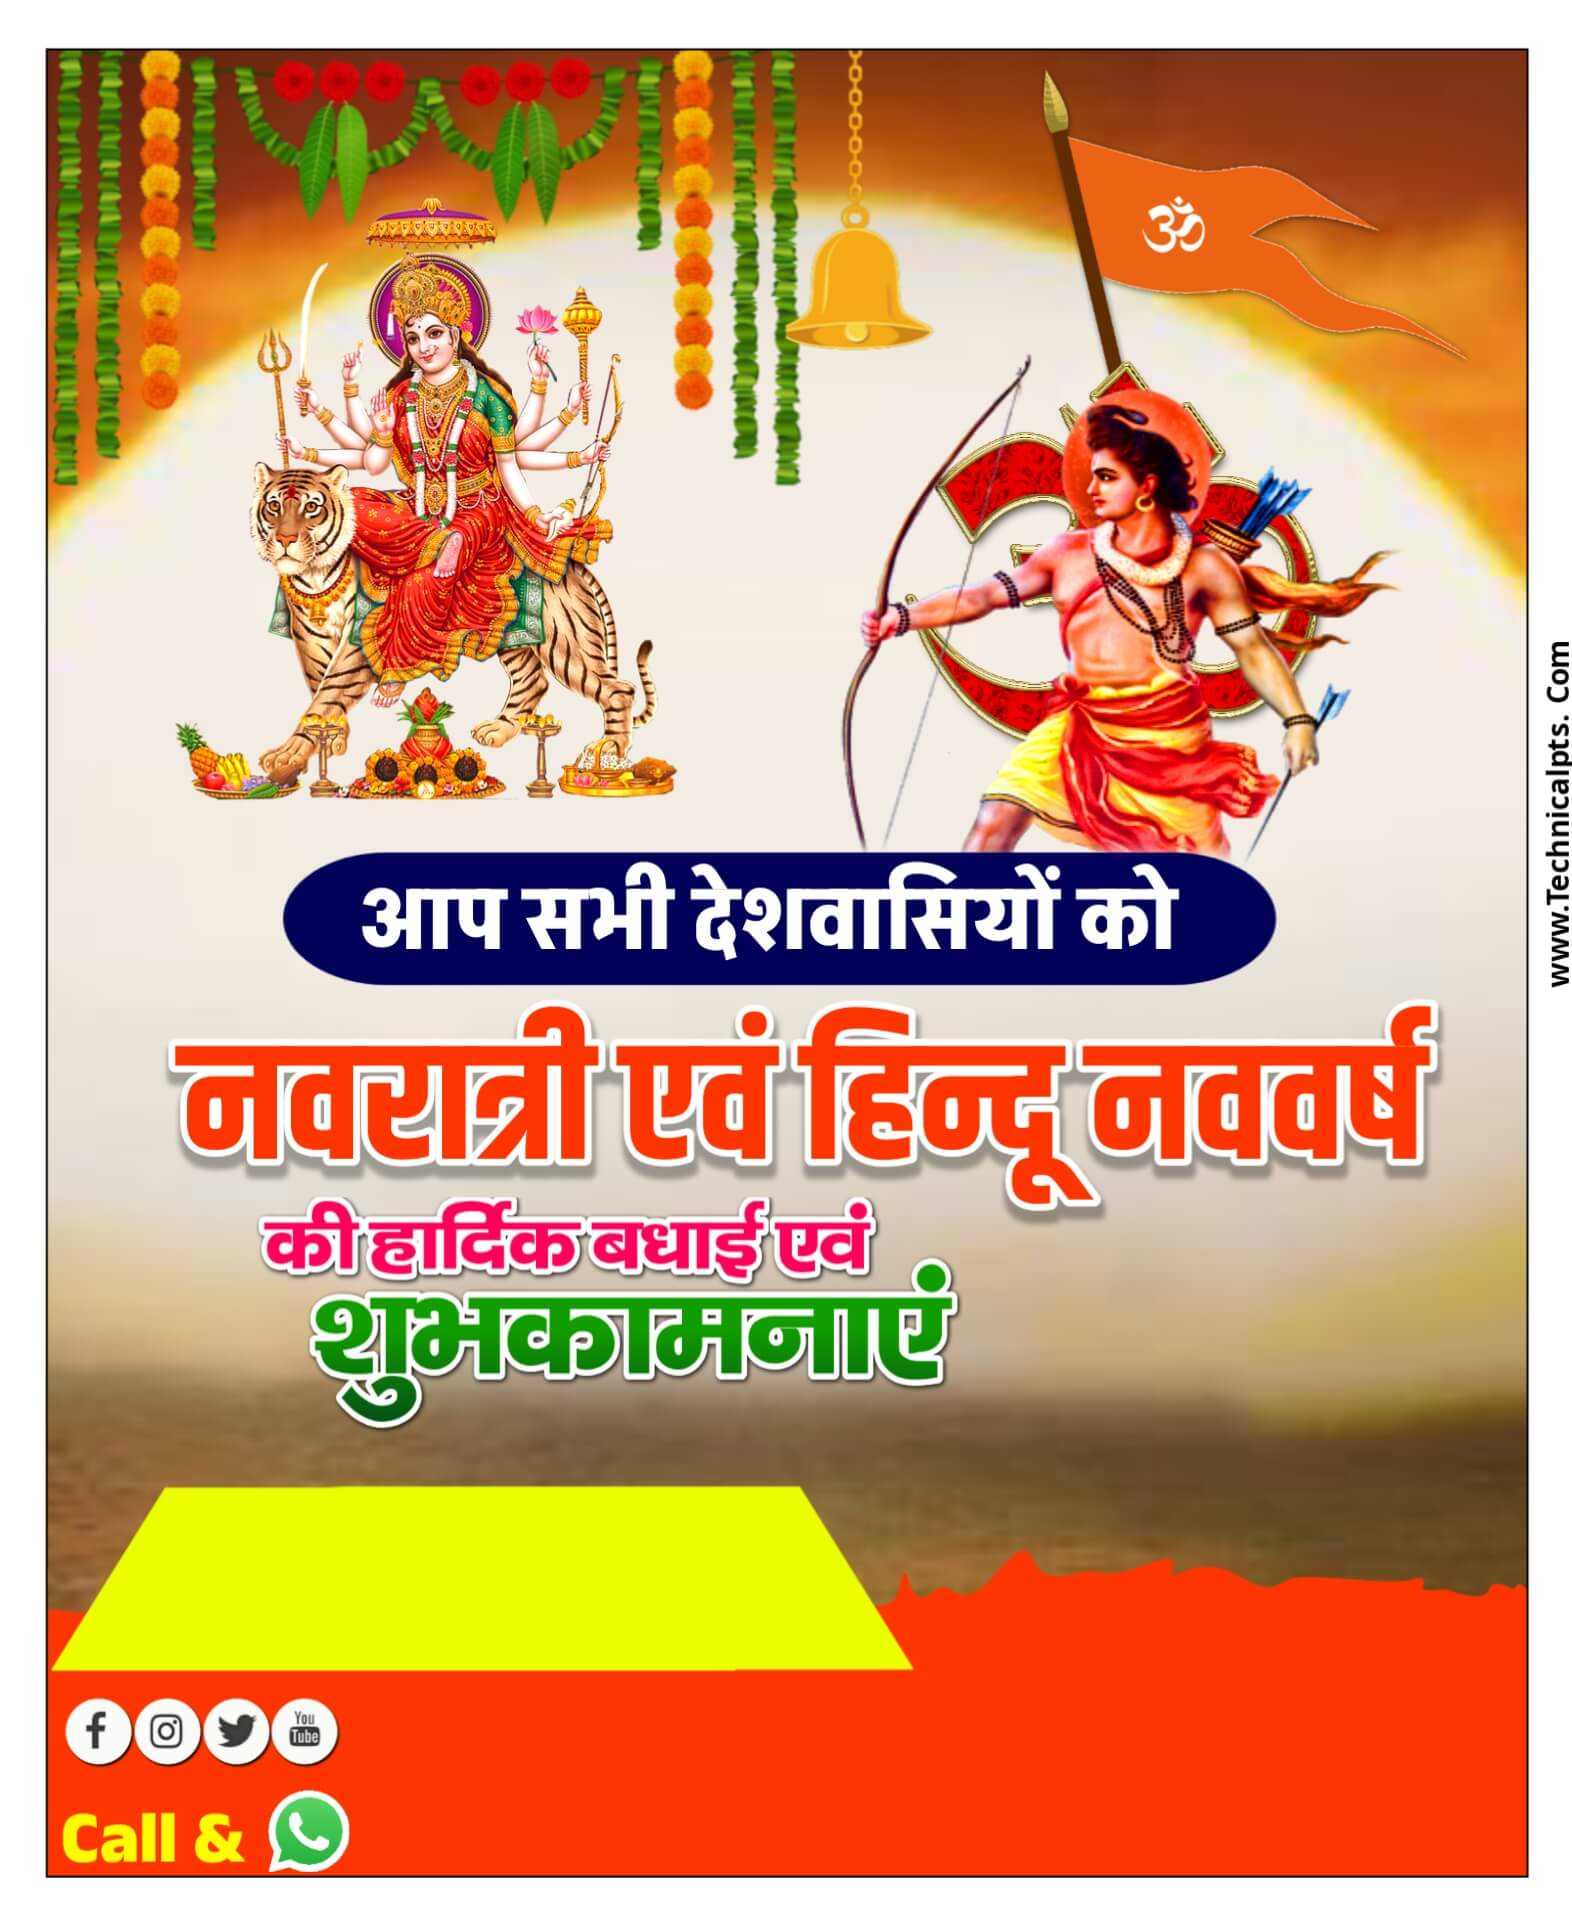 हिंदू नव वर्ष और नवरात्रि का पोस्टर बनाएं| Chaitra Navratri poster Kaise banaen| Hindu Nav varsh ka poster